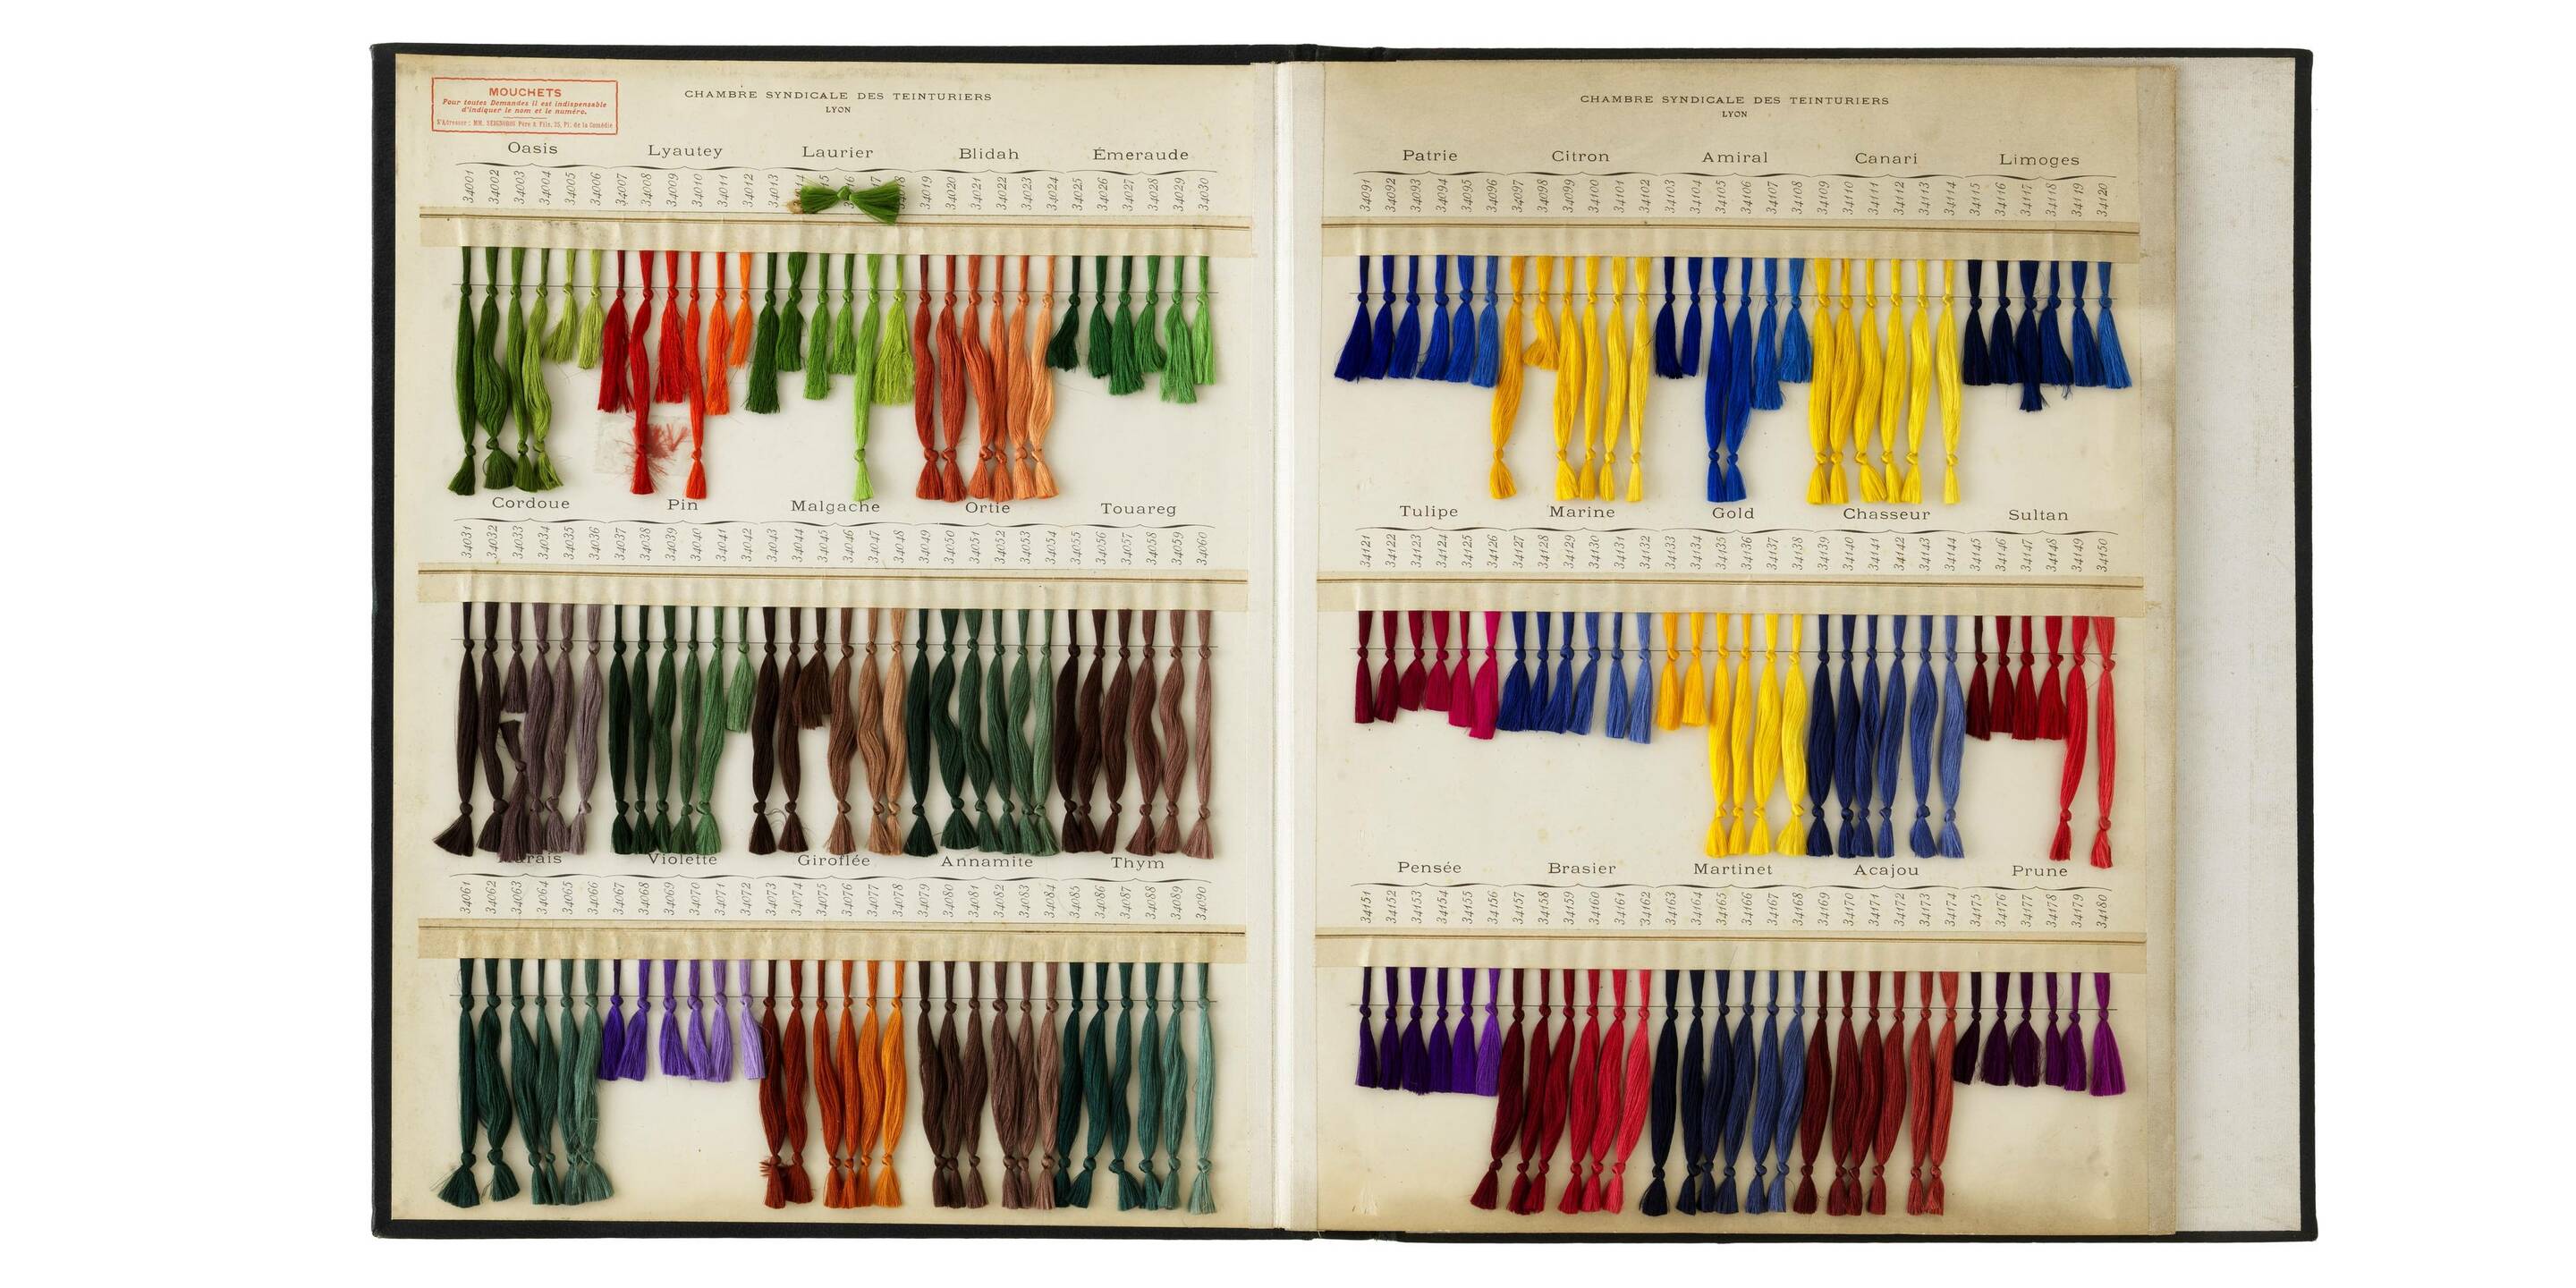 Carte de nuances de la chambre syndicale des Teinturiers, Lyon, printemps 1932. © © musée des Tissus – Pierre Verrier